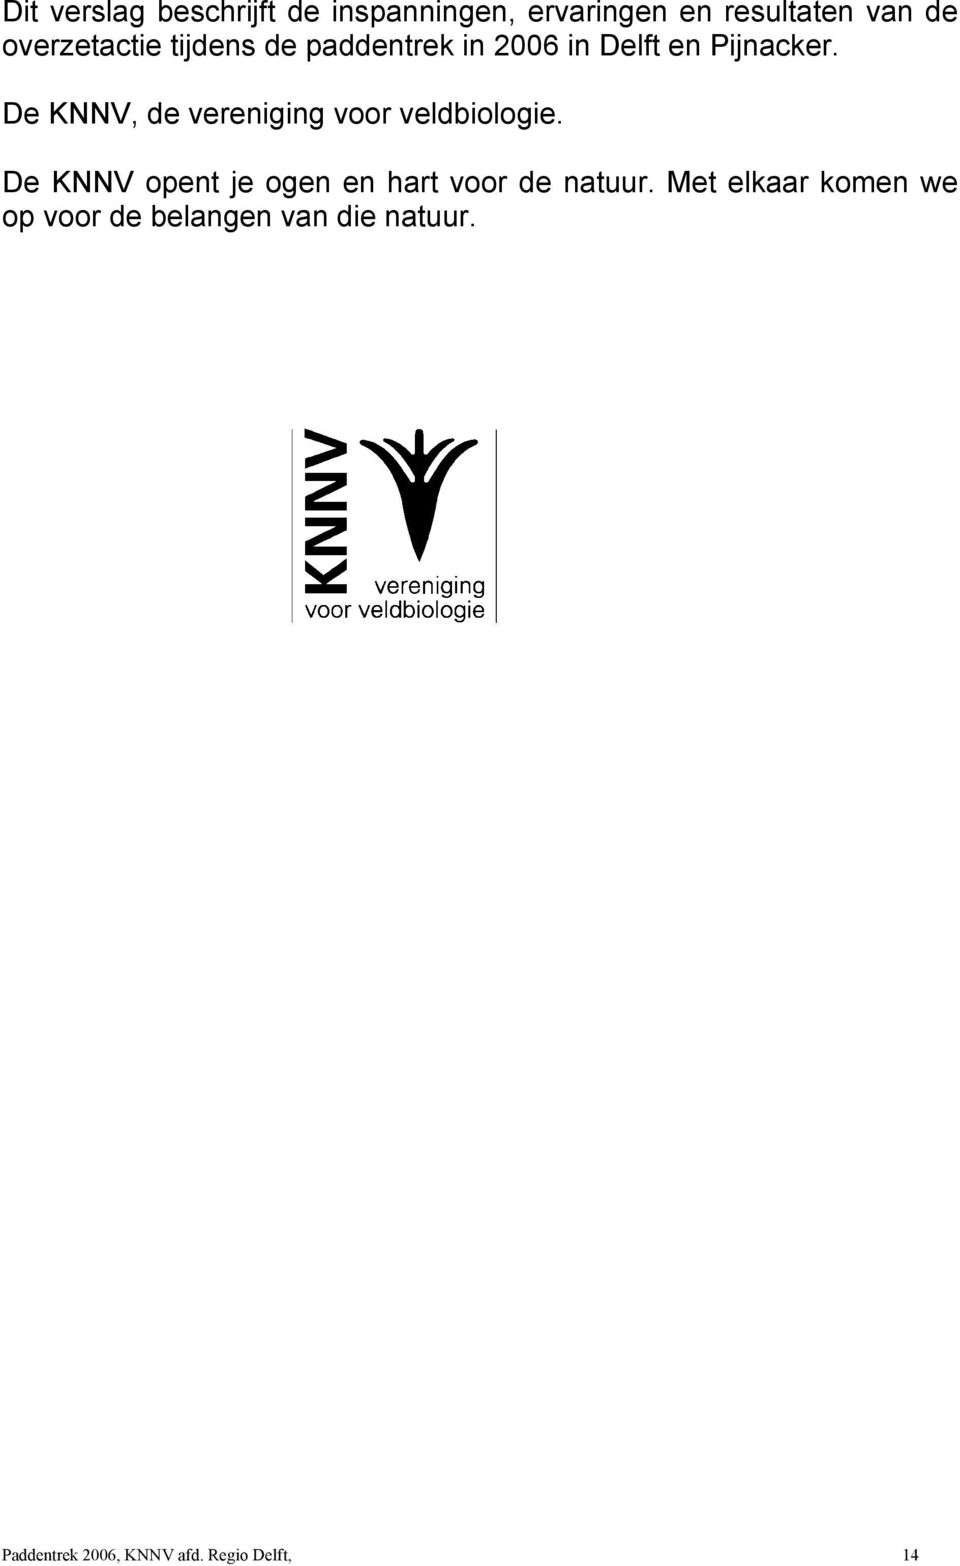 De KNNV, de vereniging voor veldbiologie.